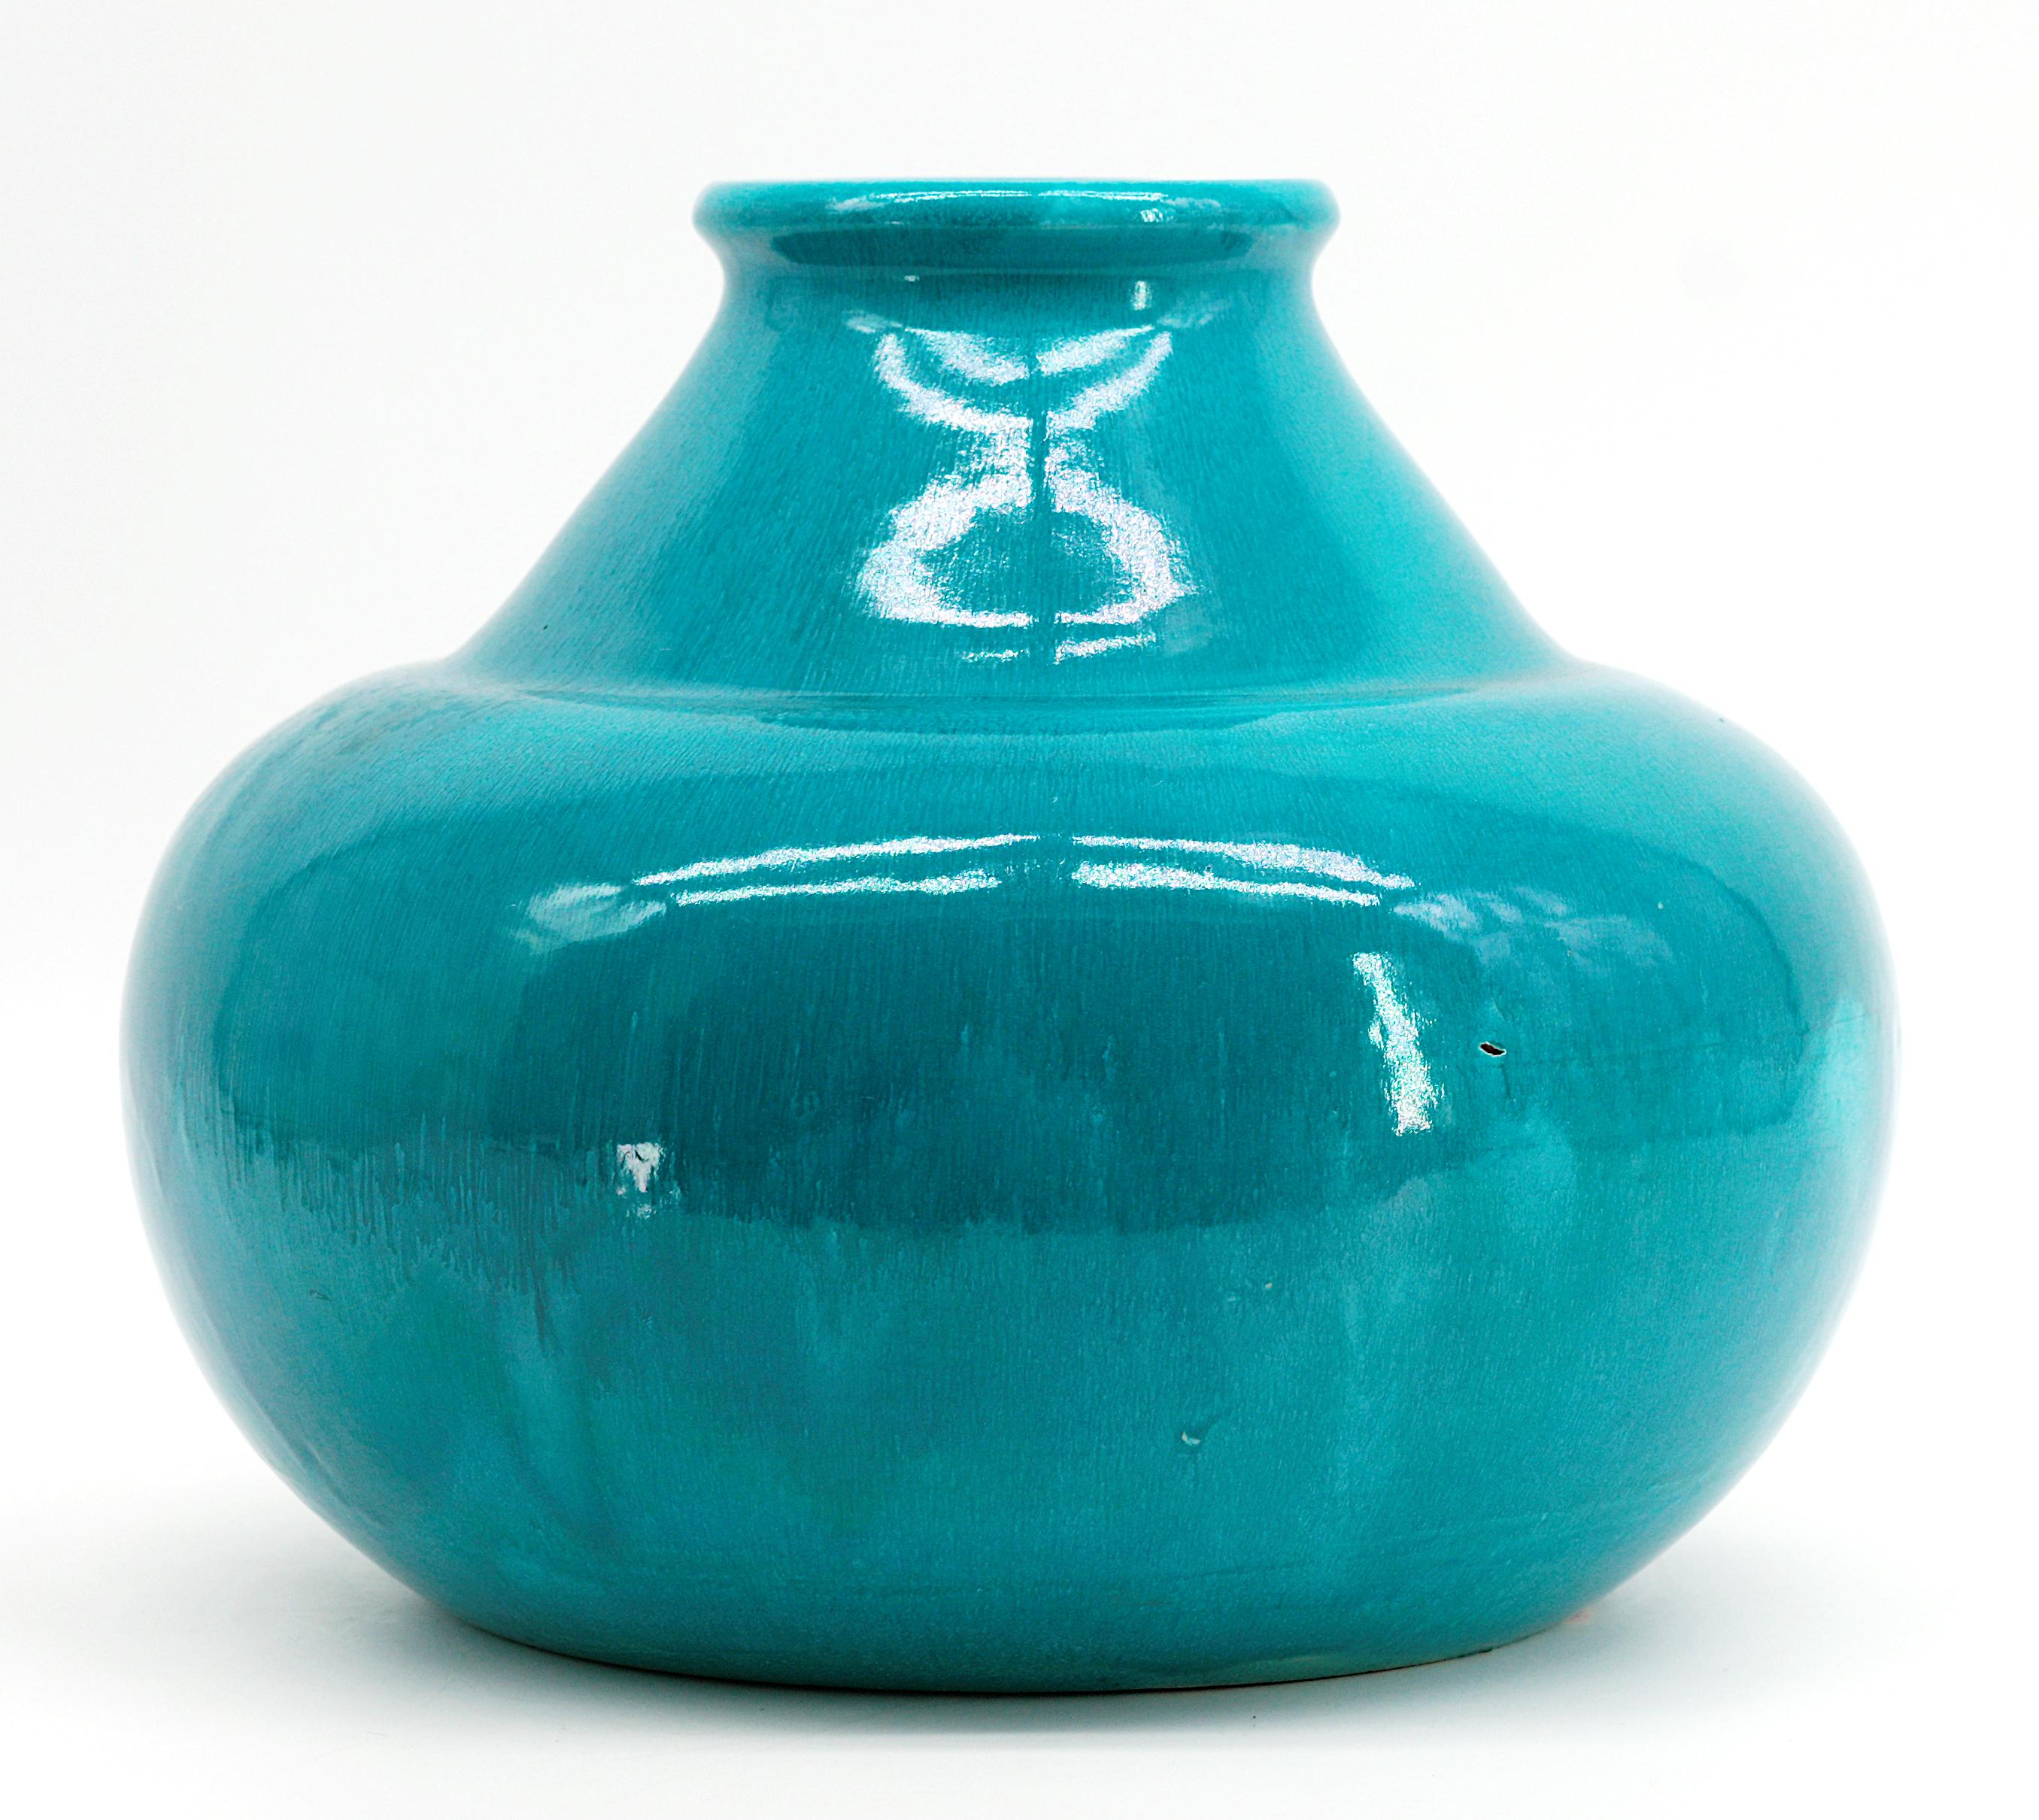 French Art Deco ceramic vase by Céramique d'Art de Bordeaux - CAB, France, 1930s. Stoneware. Turquoise cover. Height: 7.9